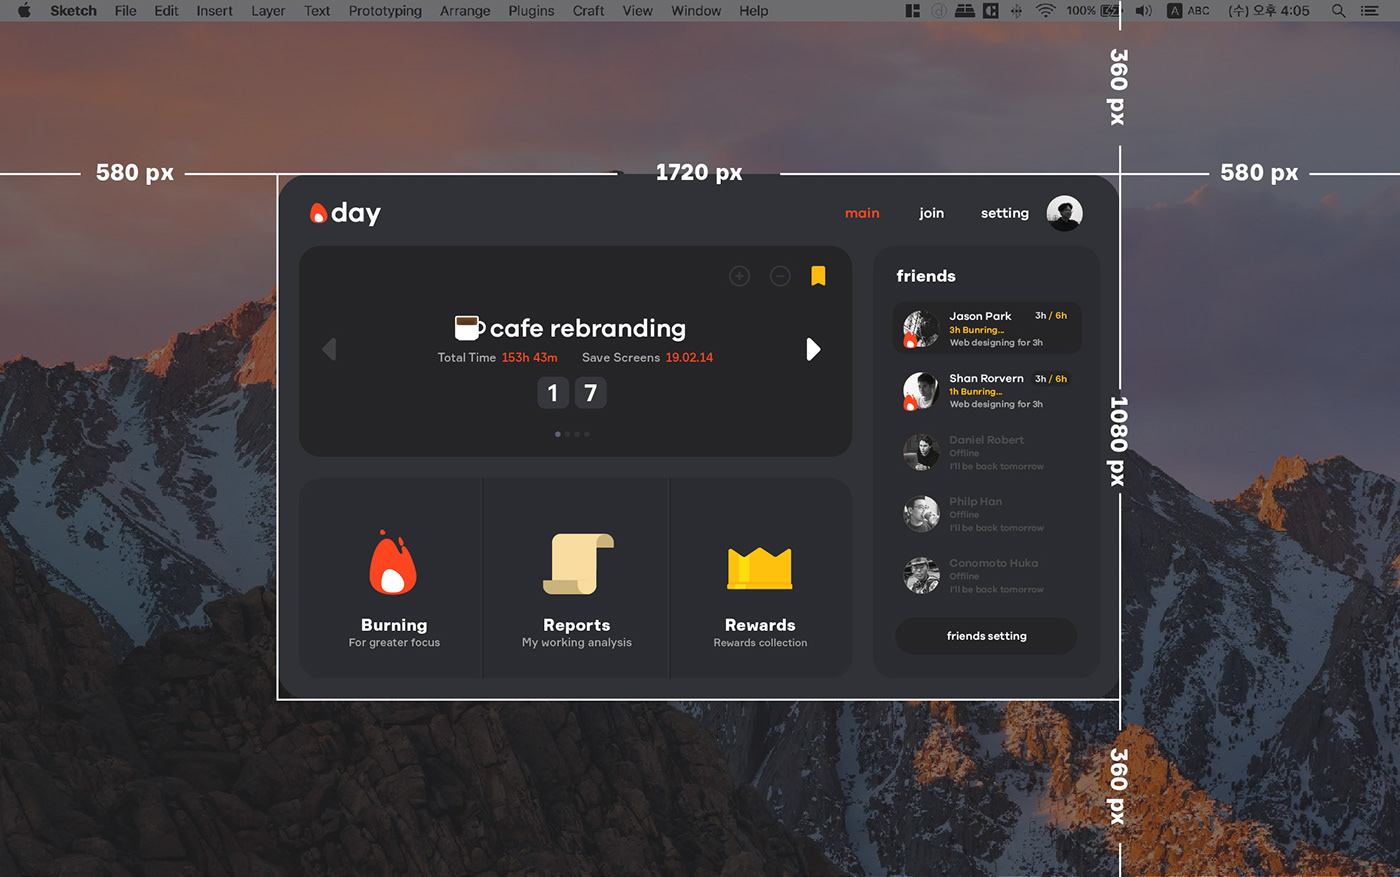 interaction dashboard burning burningday uxui UI GUI graphicdesign dasktop Laptop adobeawards